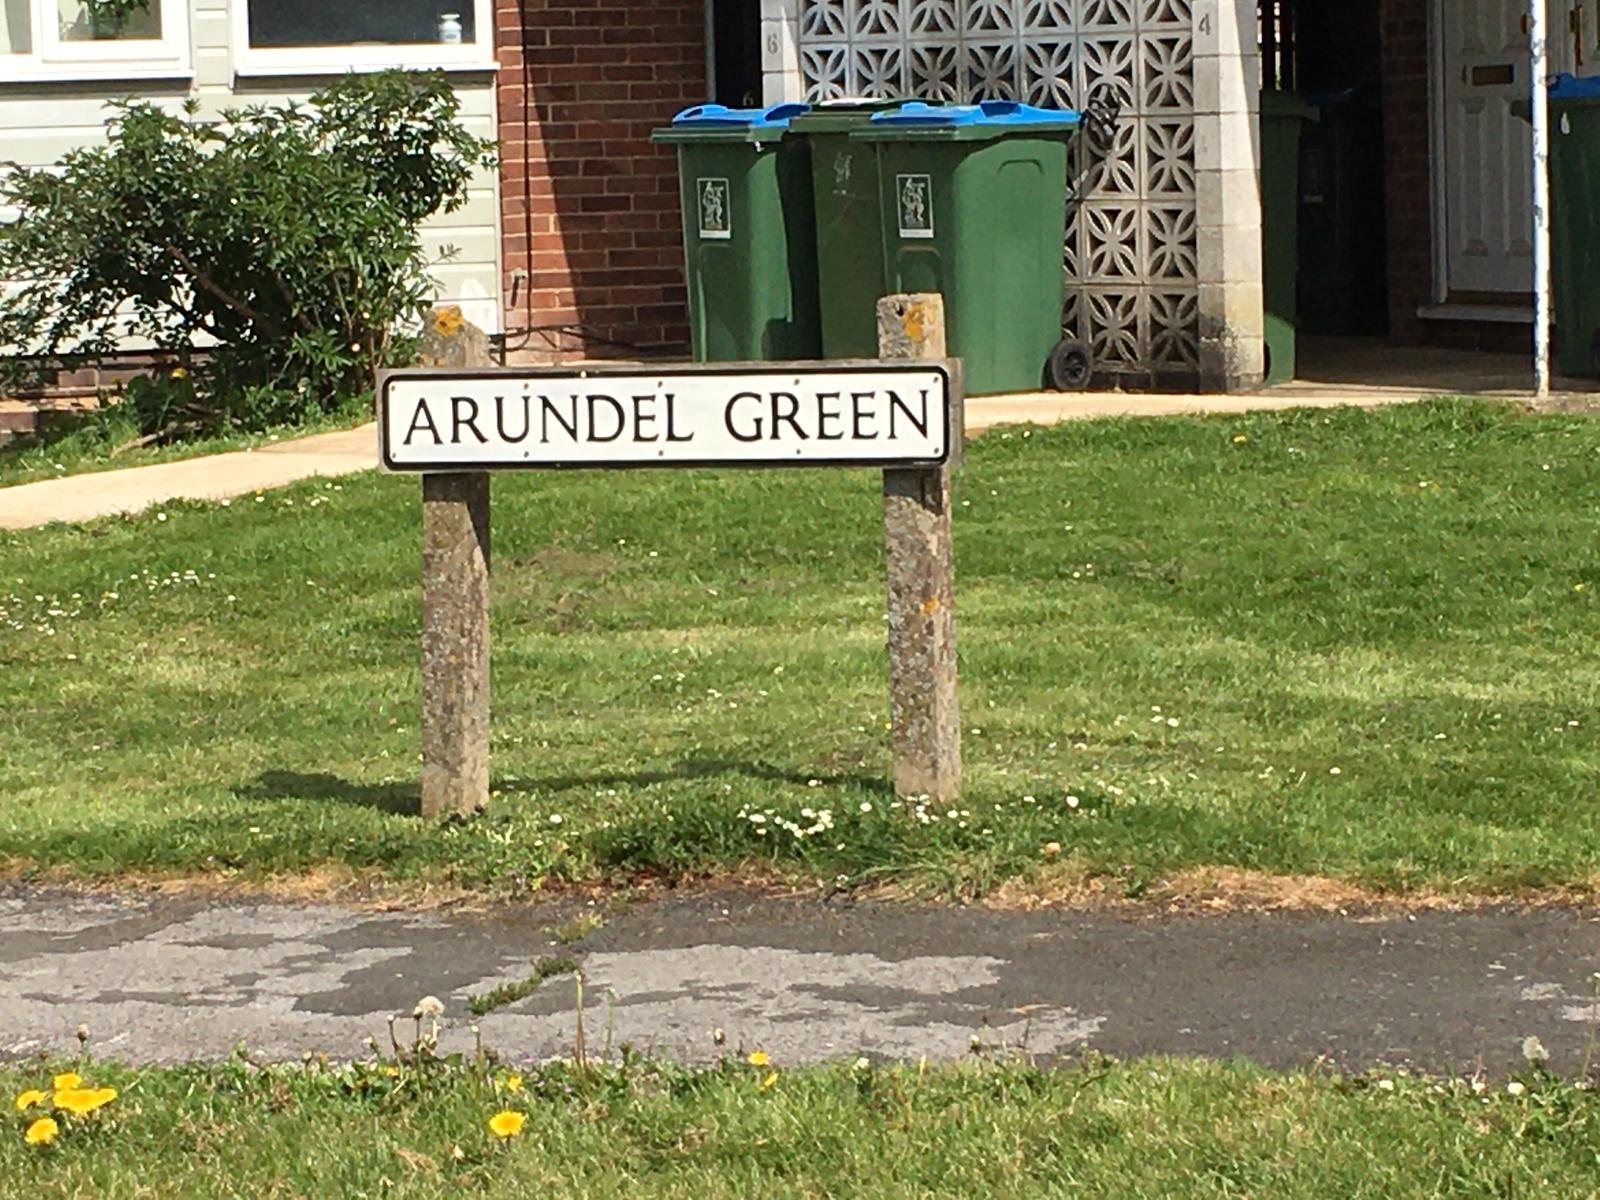 Arundel Green in Aylesbury